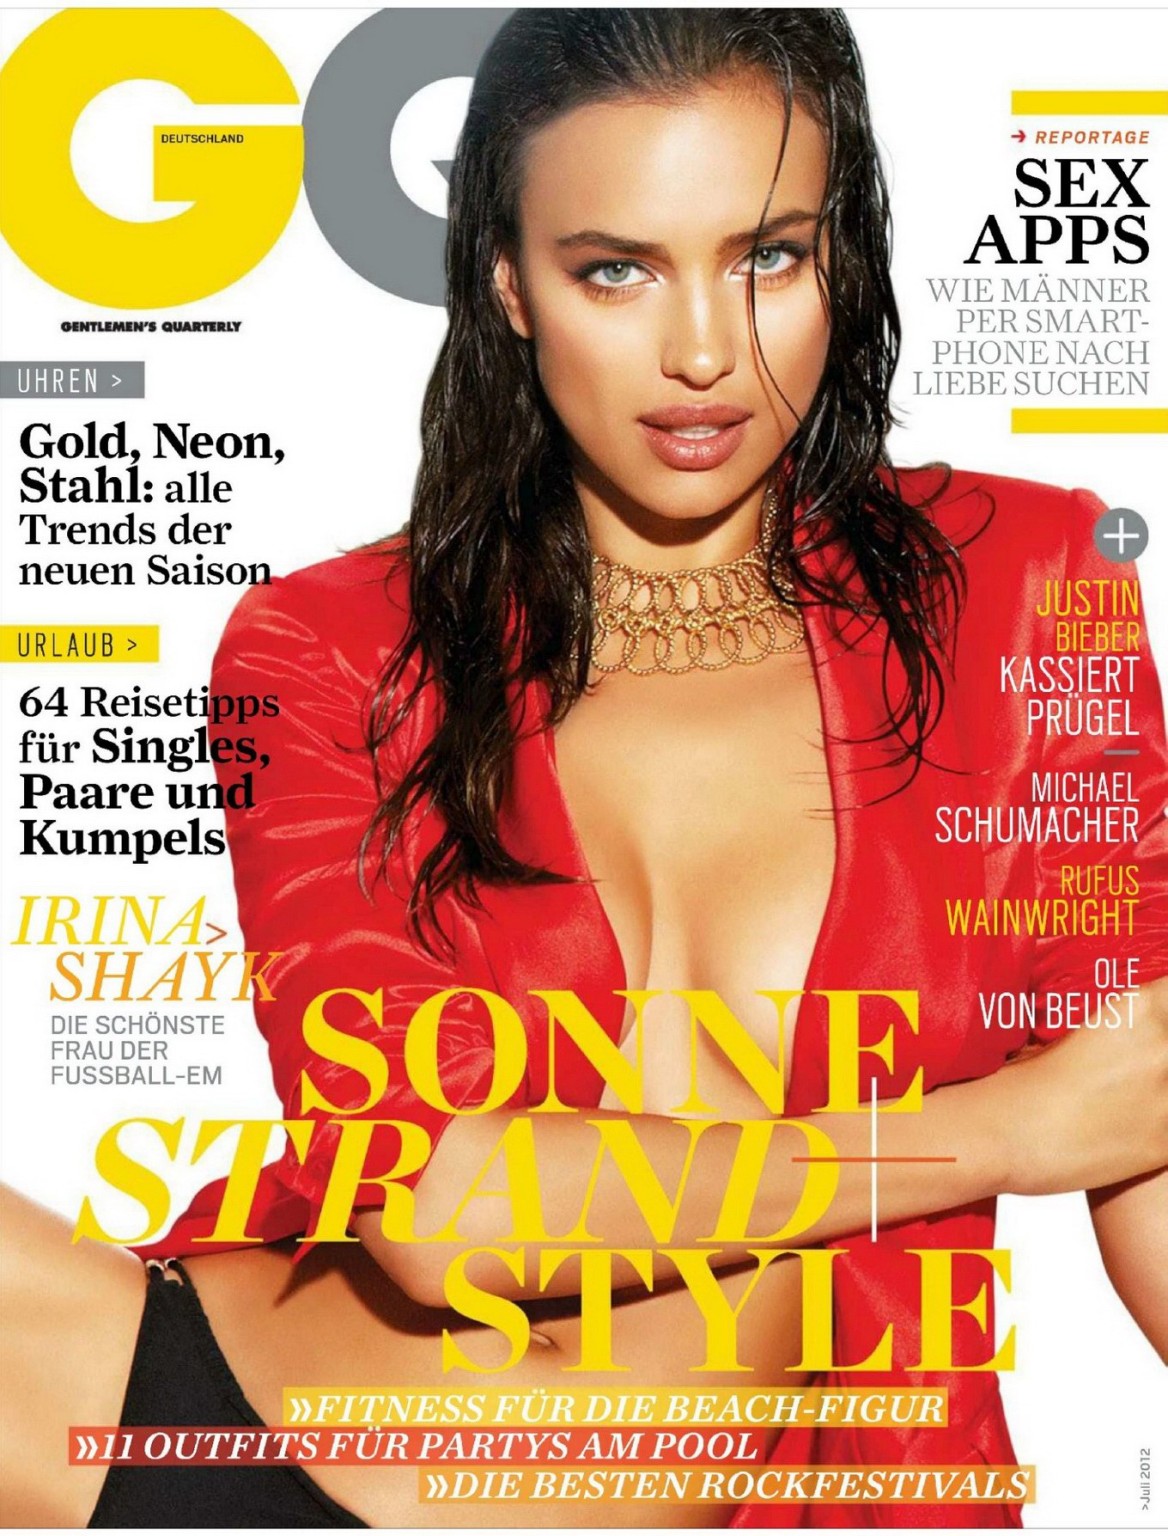 Irina shayk zeigt seitliche brüste in der juli 2012 ausgabe des deutschen gq-magazins
 #75260475